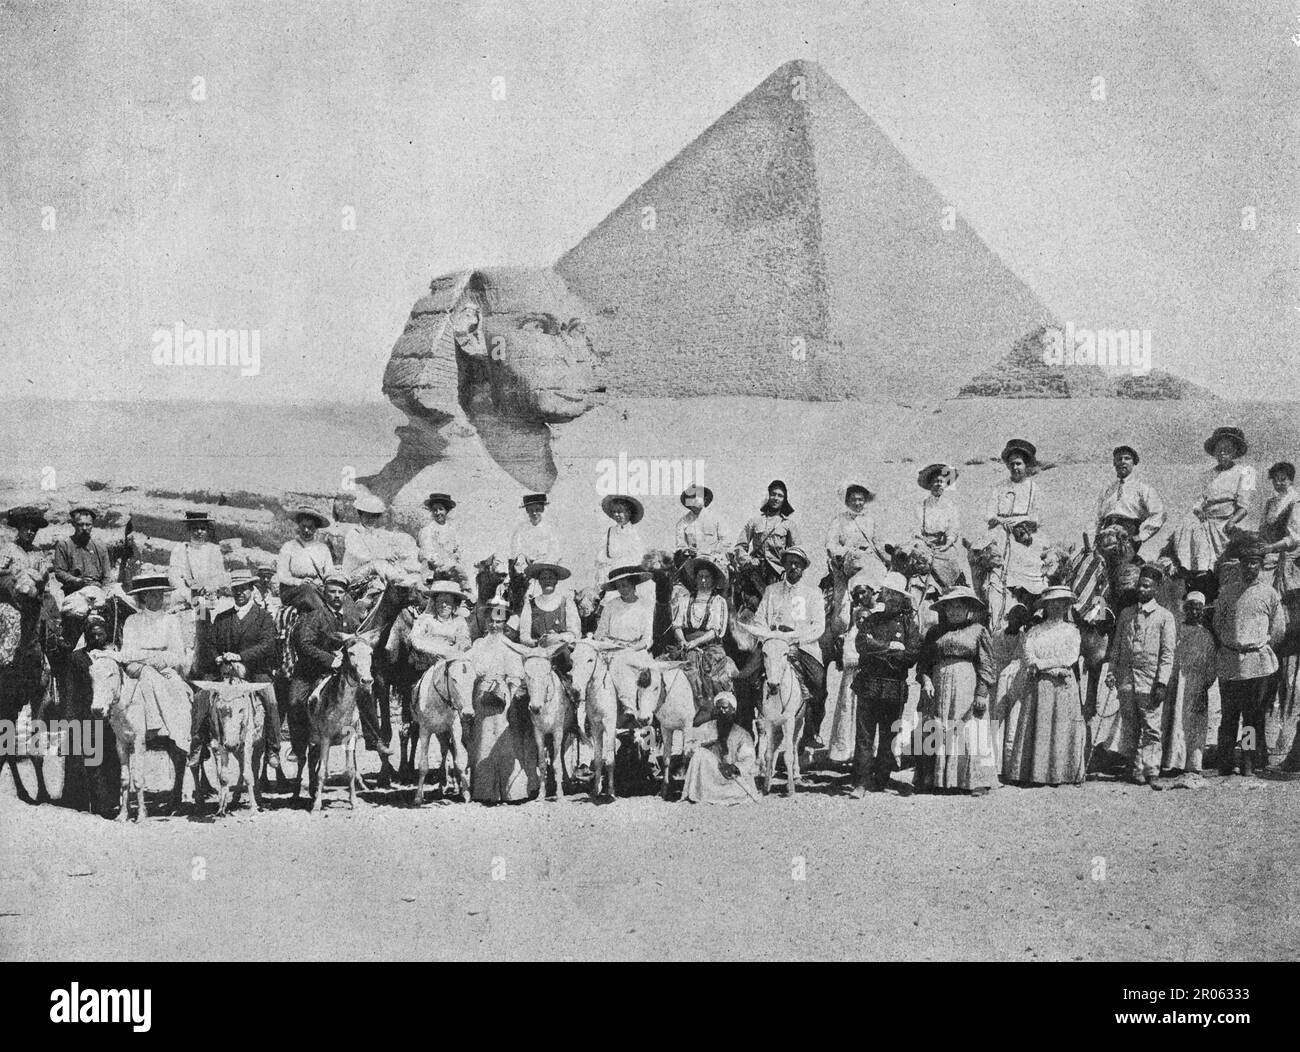 Studenti di istituti di istruzione superiore dell'Impero russo in Egitto. Foto dal 1910. Foto Stock